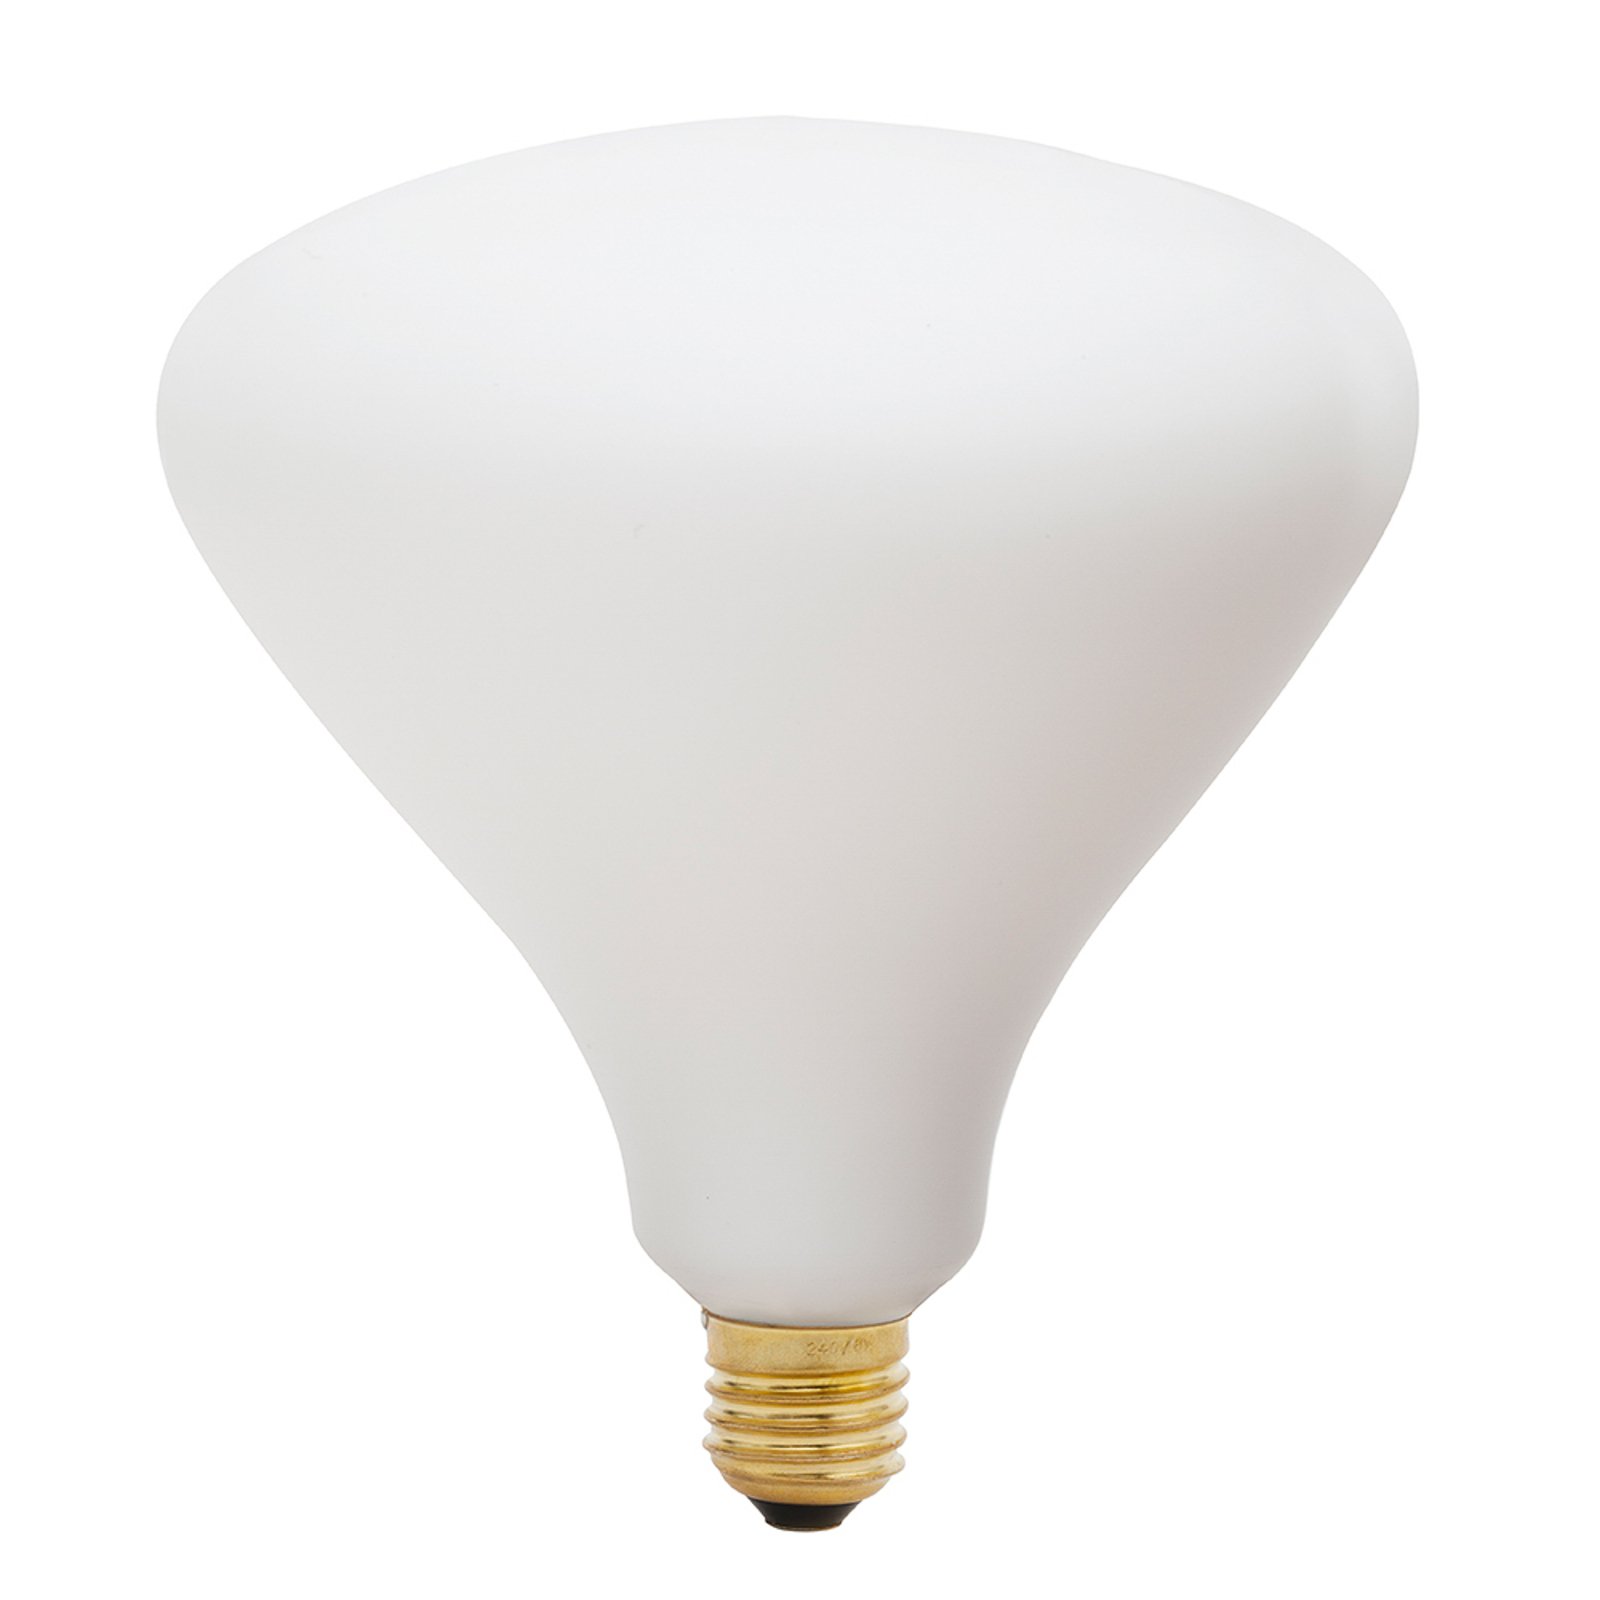 Tala LED lamp Noma mat E27 6W 2.700 K 540 lm dimbaar.